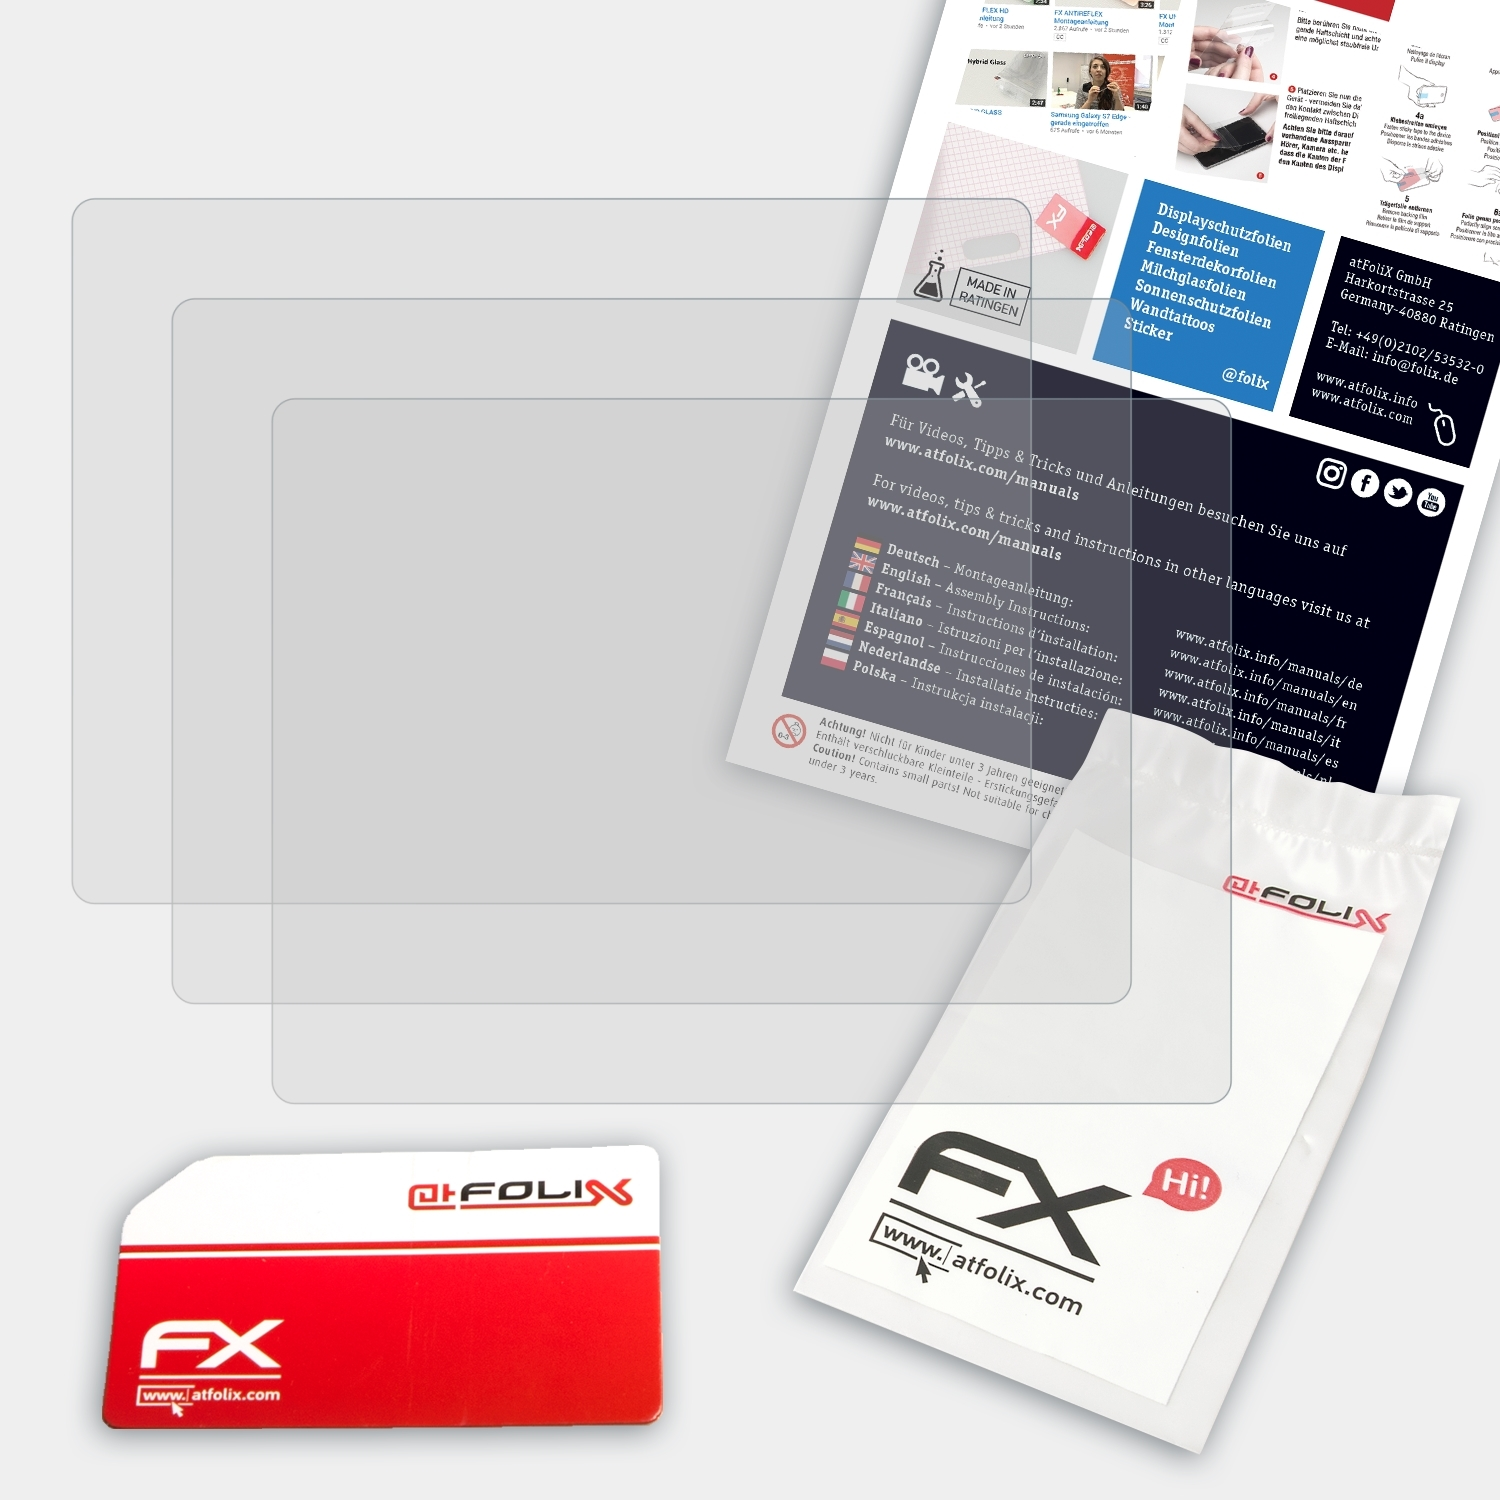 ATFOLIX 3x FX-Antireflex Displayschutz(für Lumix Panasonic DMC-TZ31)